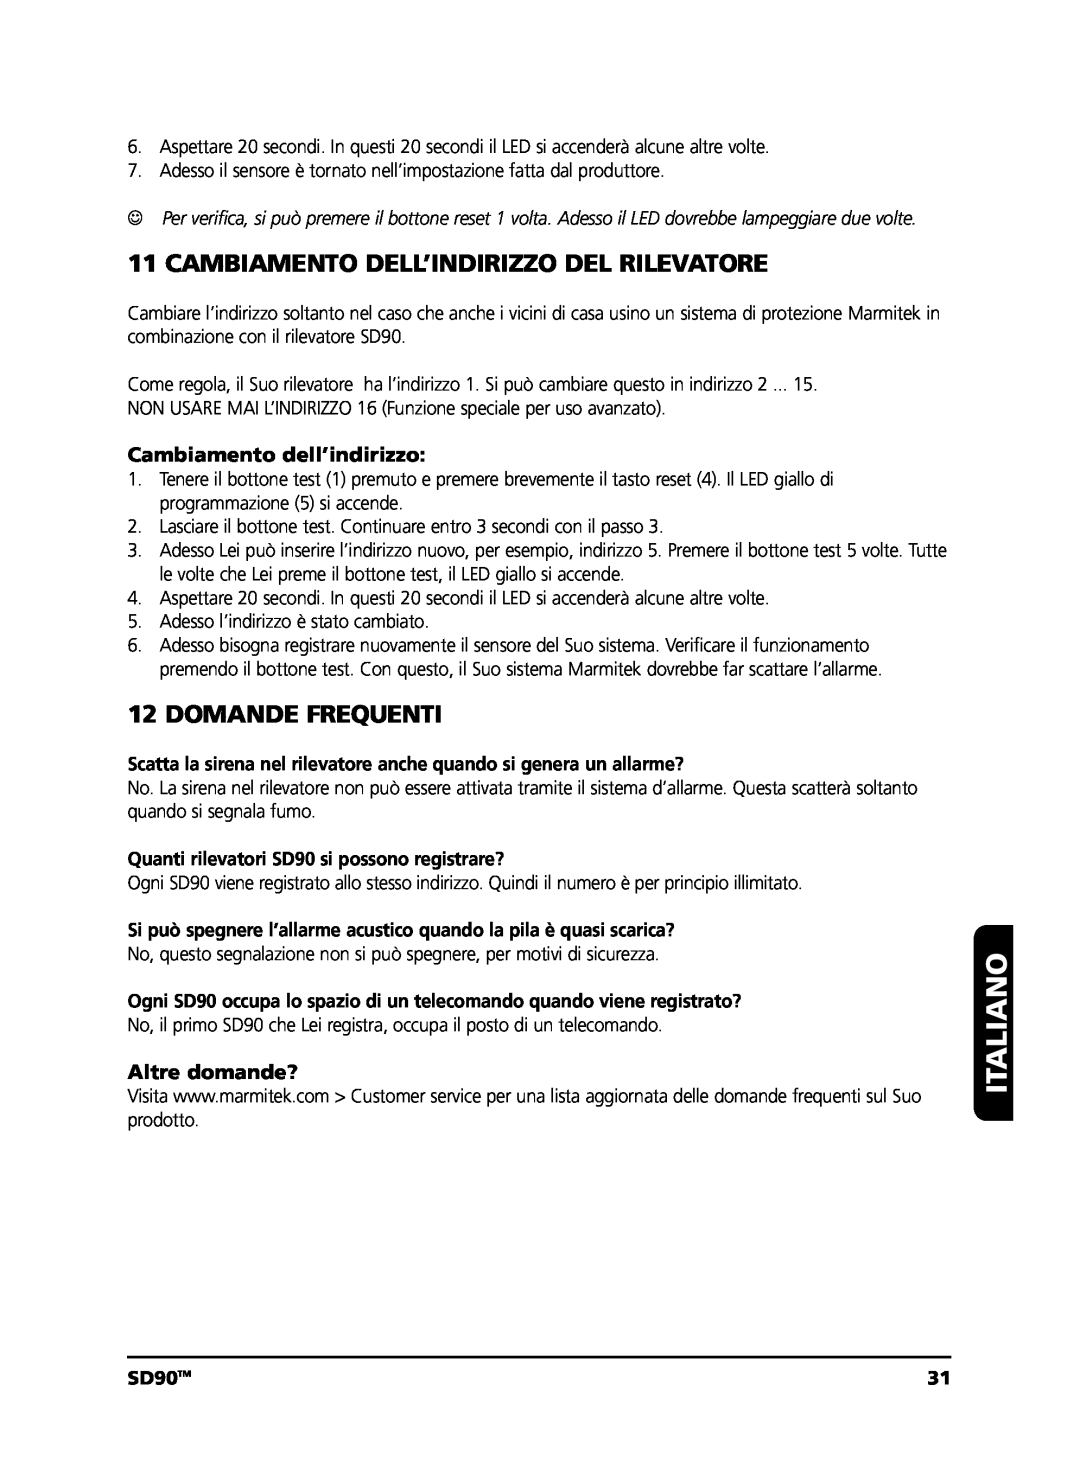 Marmitek user manual Cambiamento Dell’Indirizzo Del Rilevatore, Domande Frequenti, Italiano, SD90TM 